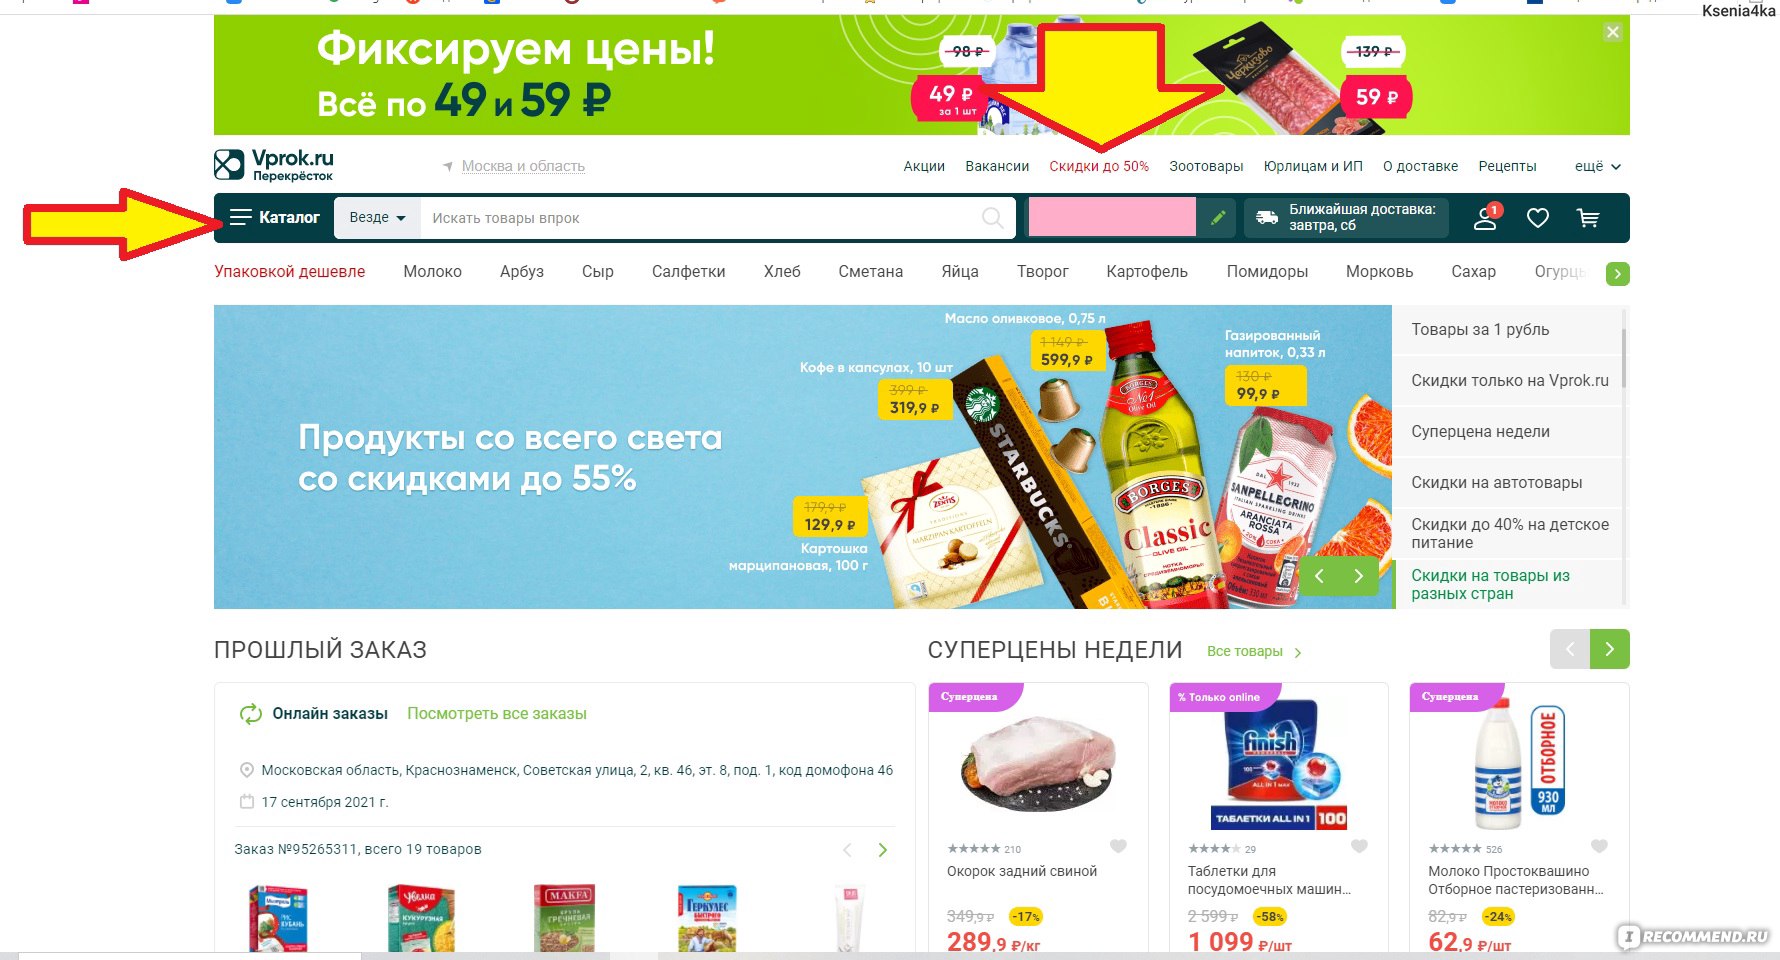 Сайт калужского перекрестка. Ассортимент в супермаркетах Владимира.